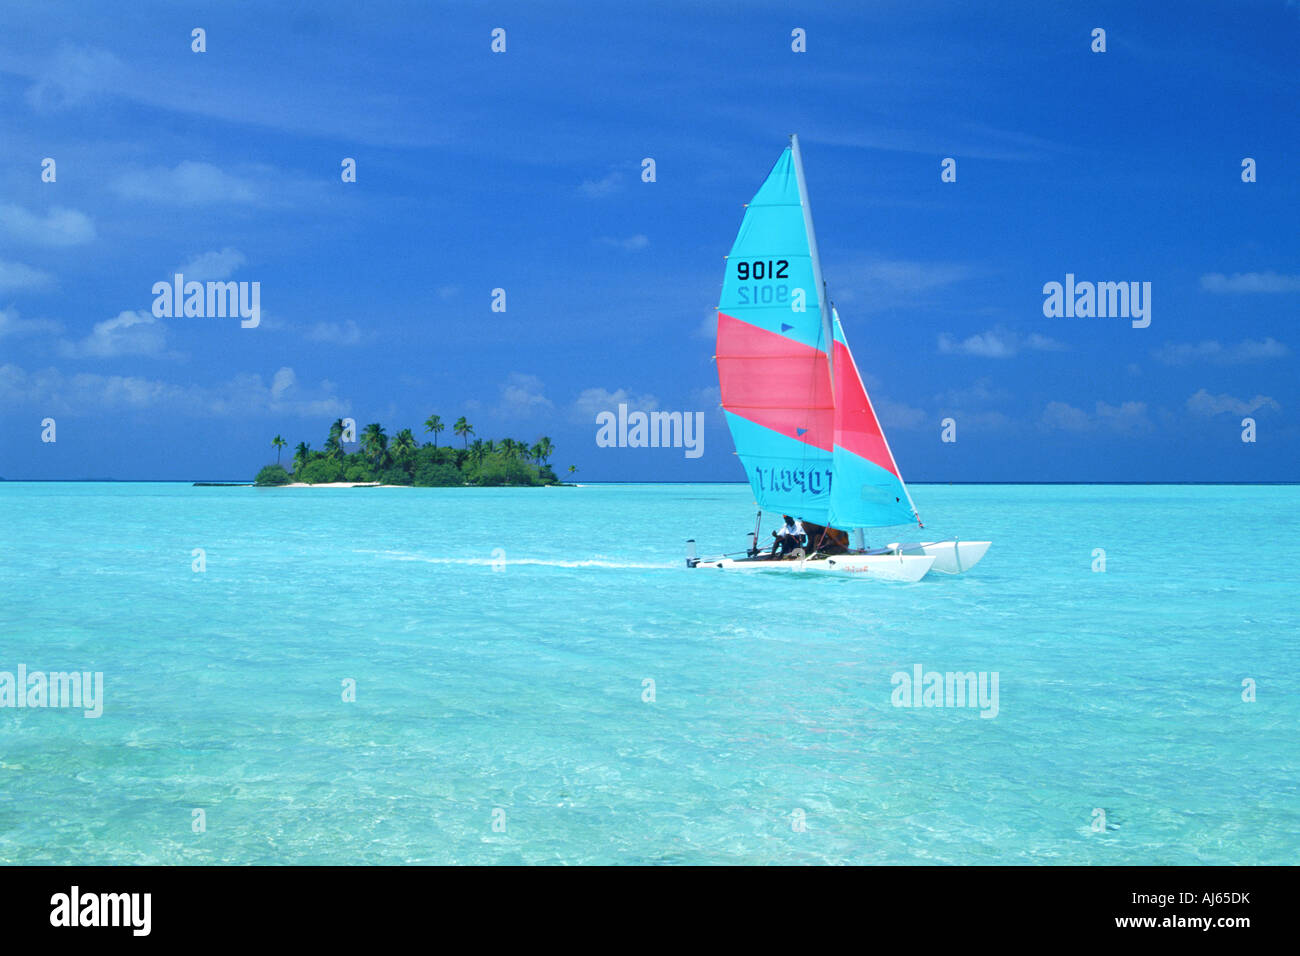 L'avion pour traverser les eaux aqua Catamaran passé île déserte dans les Maldives Banque D'Images